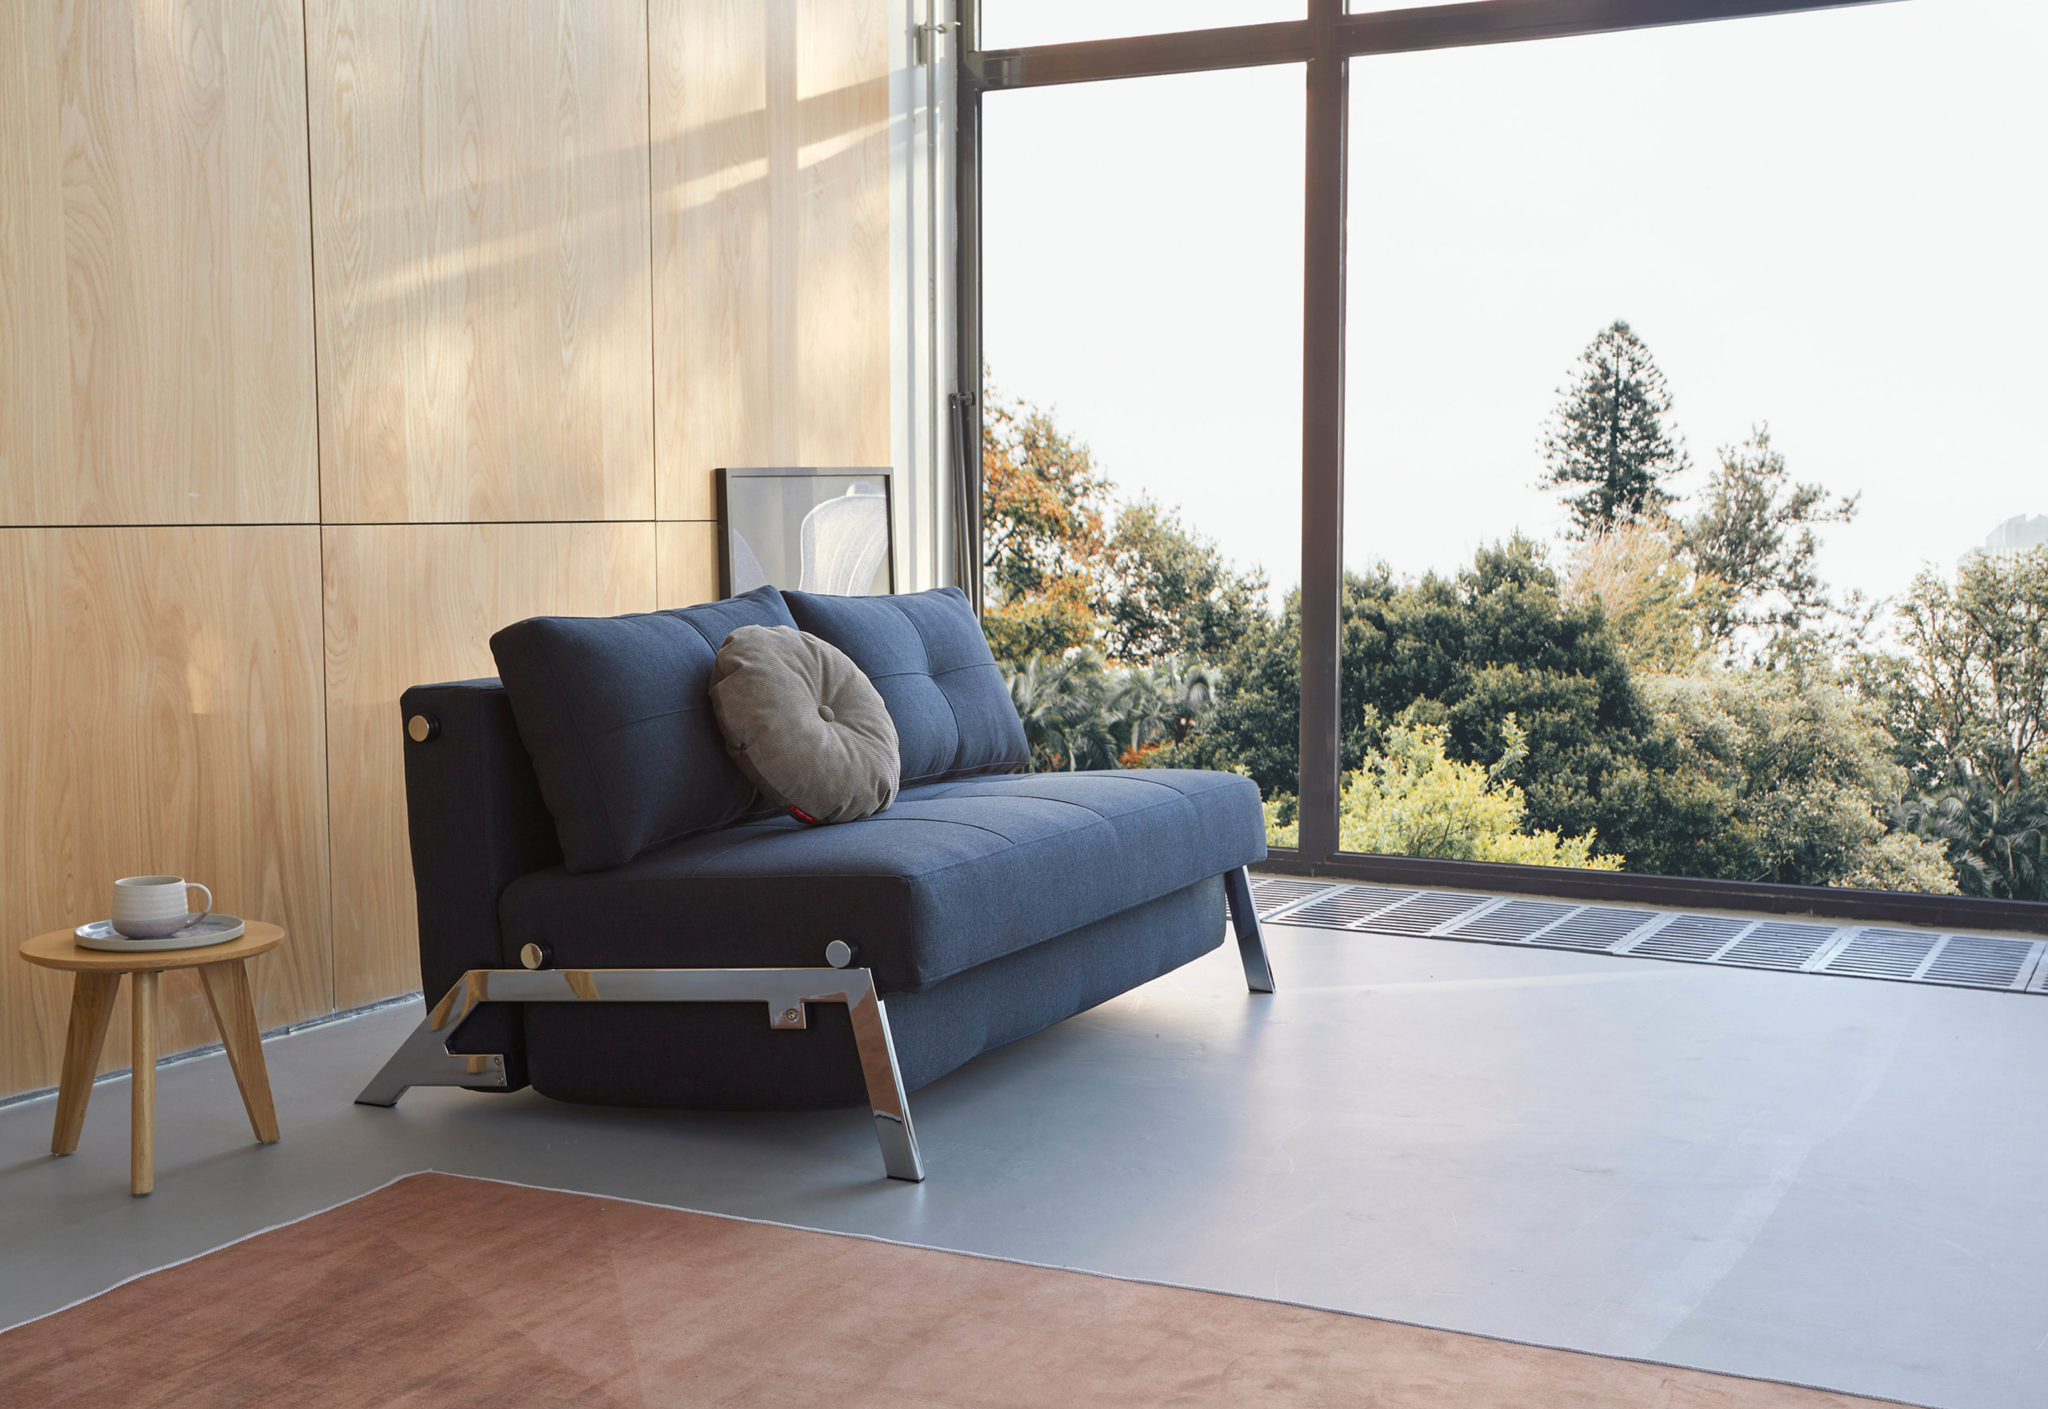 innovation sofa beds melbourne